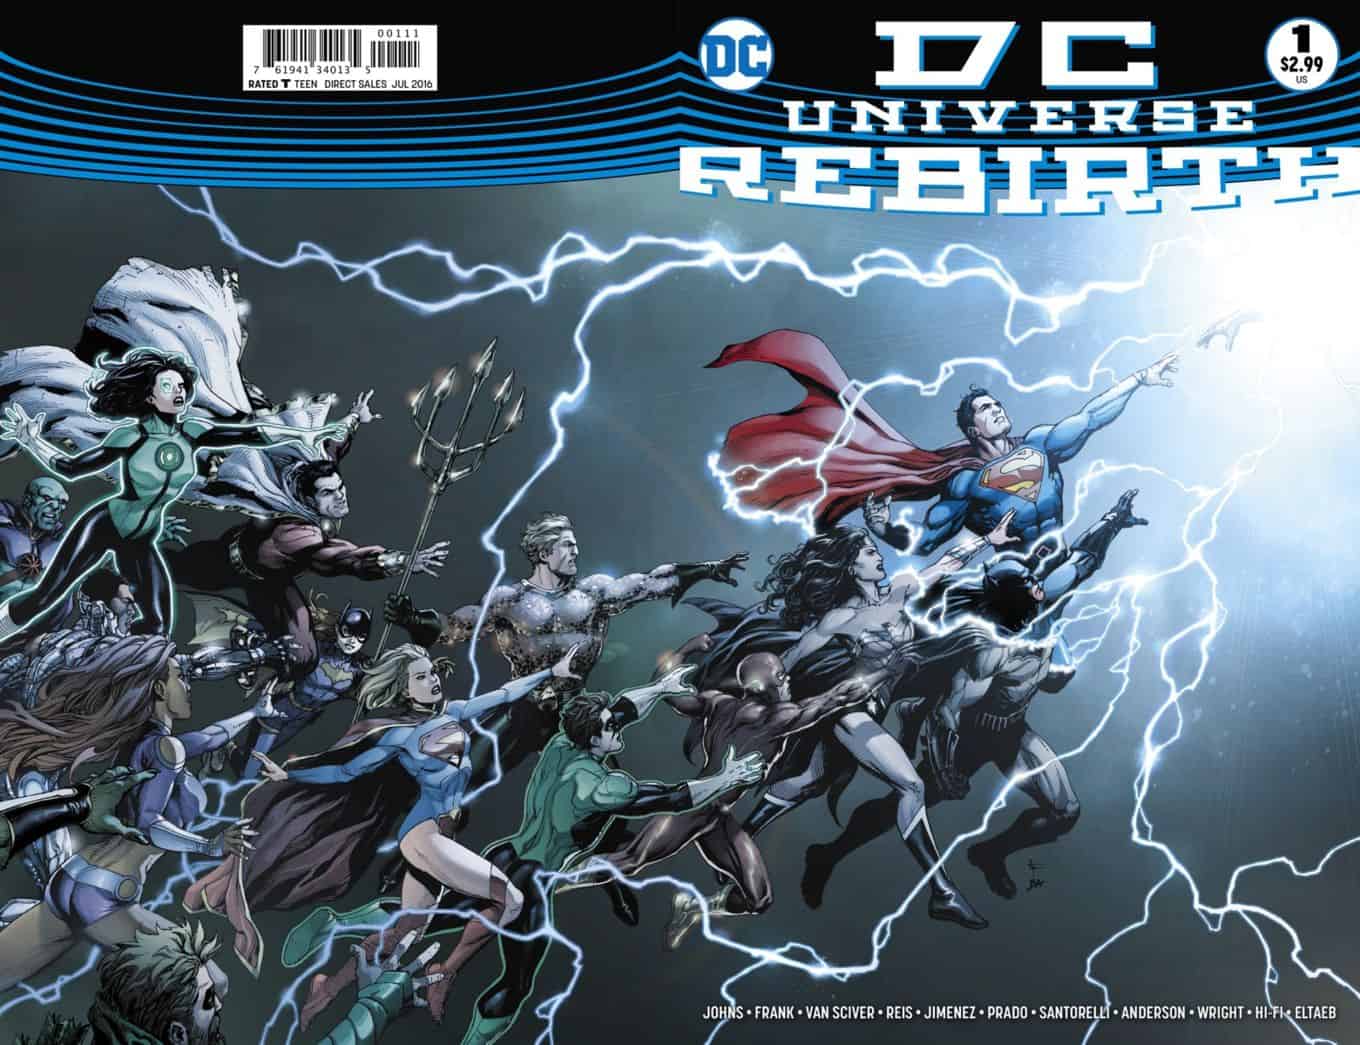 DC Universe Rebirth #1 spoilers preview 1